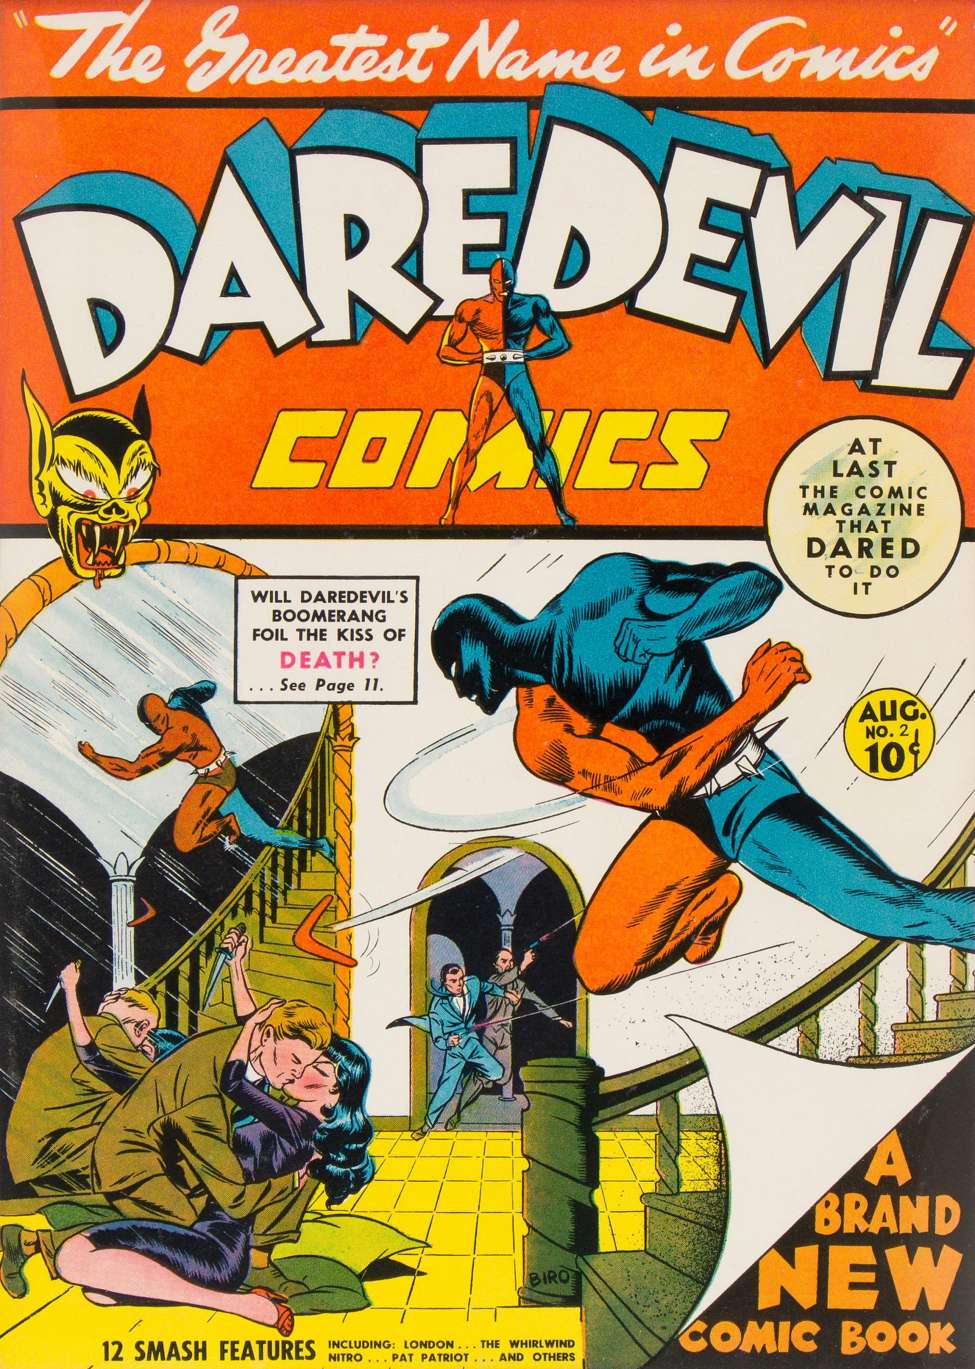 Book Cover For Daredevil Comics 2 (1 fiche) - Version 2